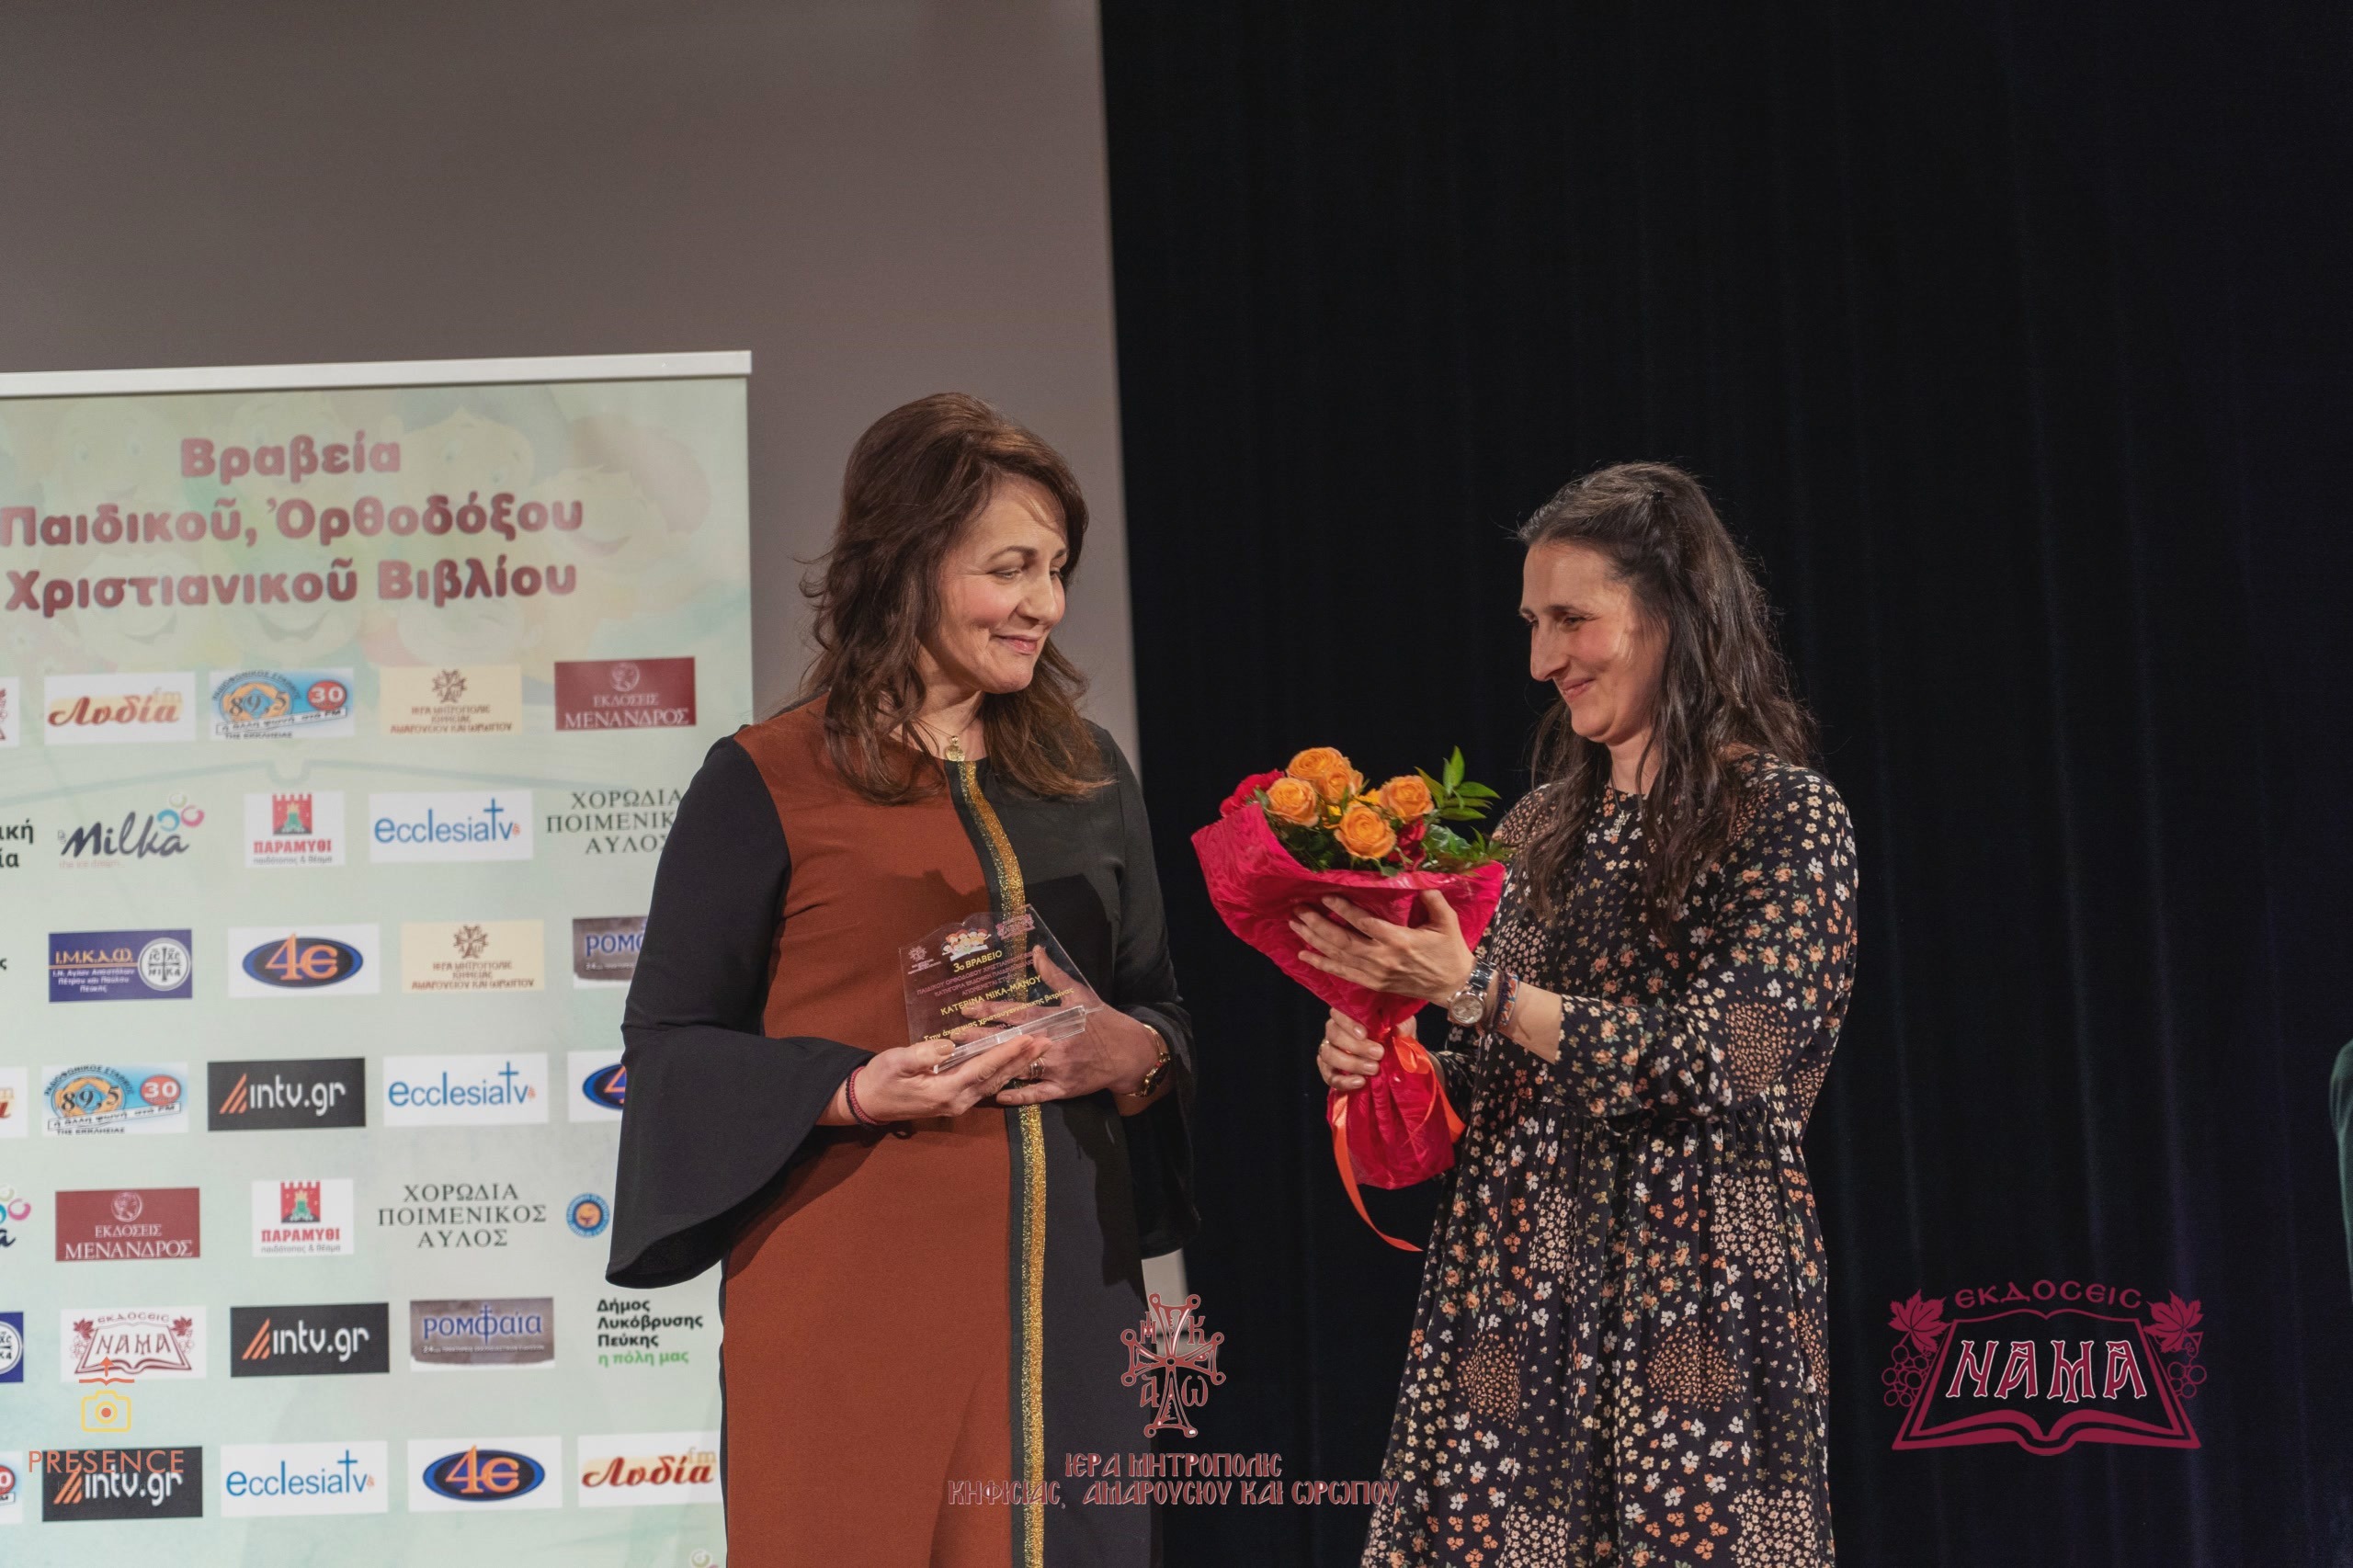 Η κυρία Κατερίνα Νίκα-Μάνου παραλαμβάνει το βραβείο από την κυρία Νικολέττα Σκάλκου.